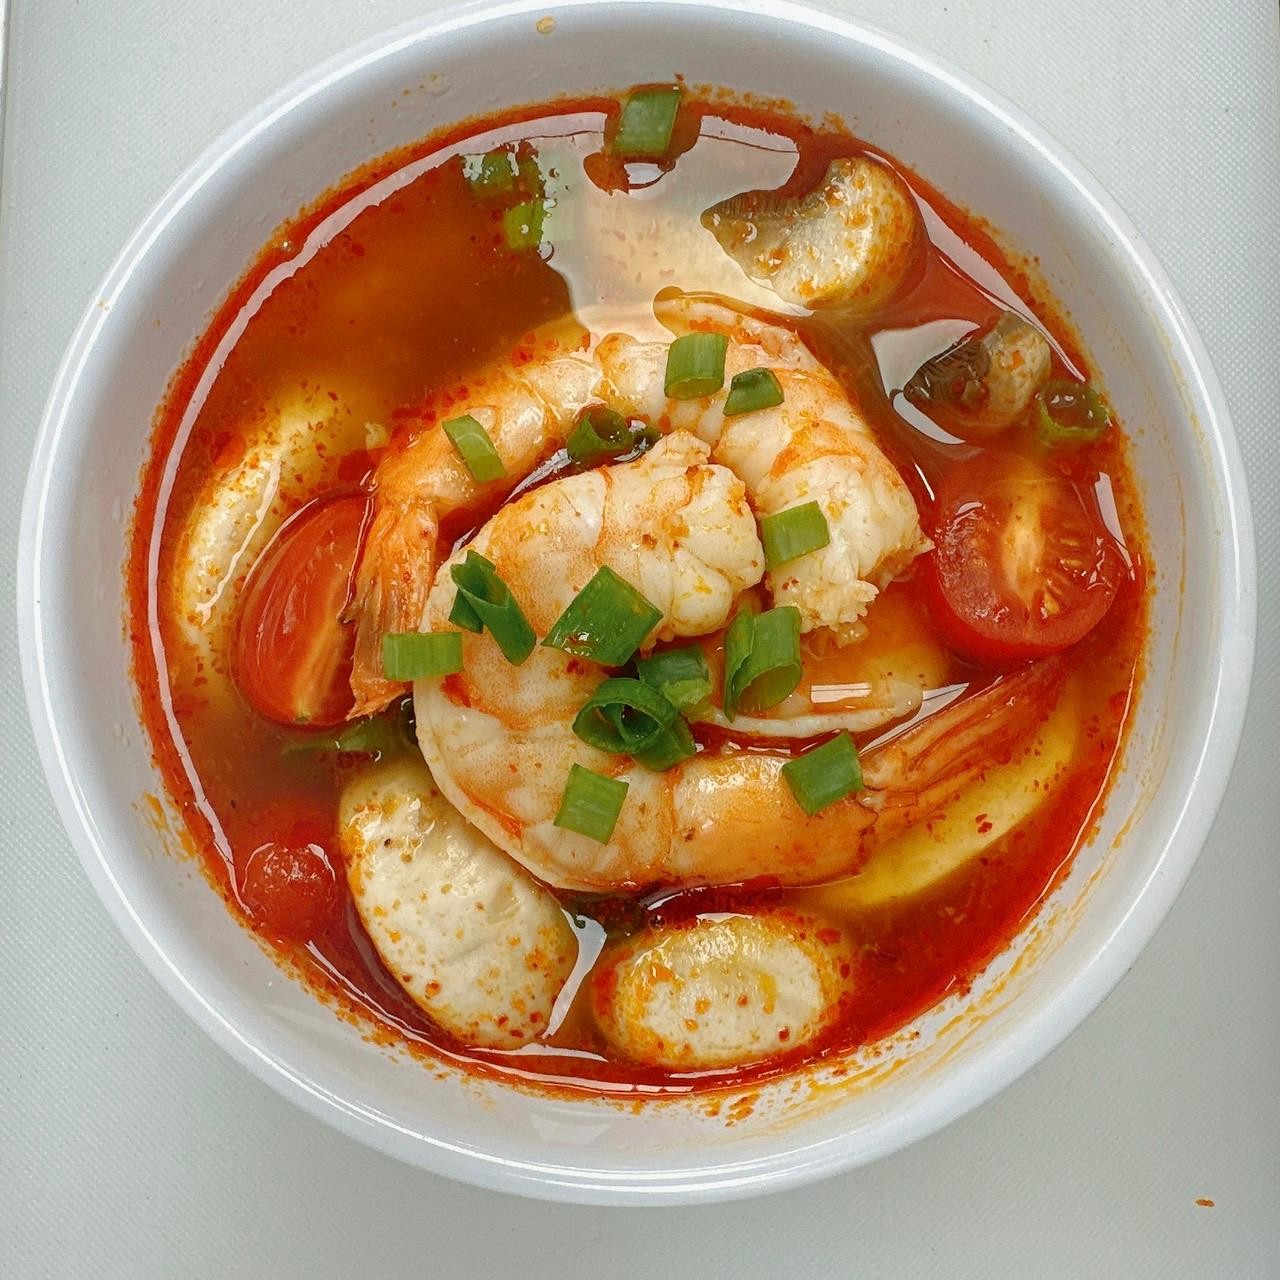 Tom Yum Kung soup